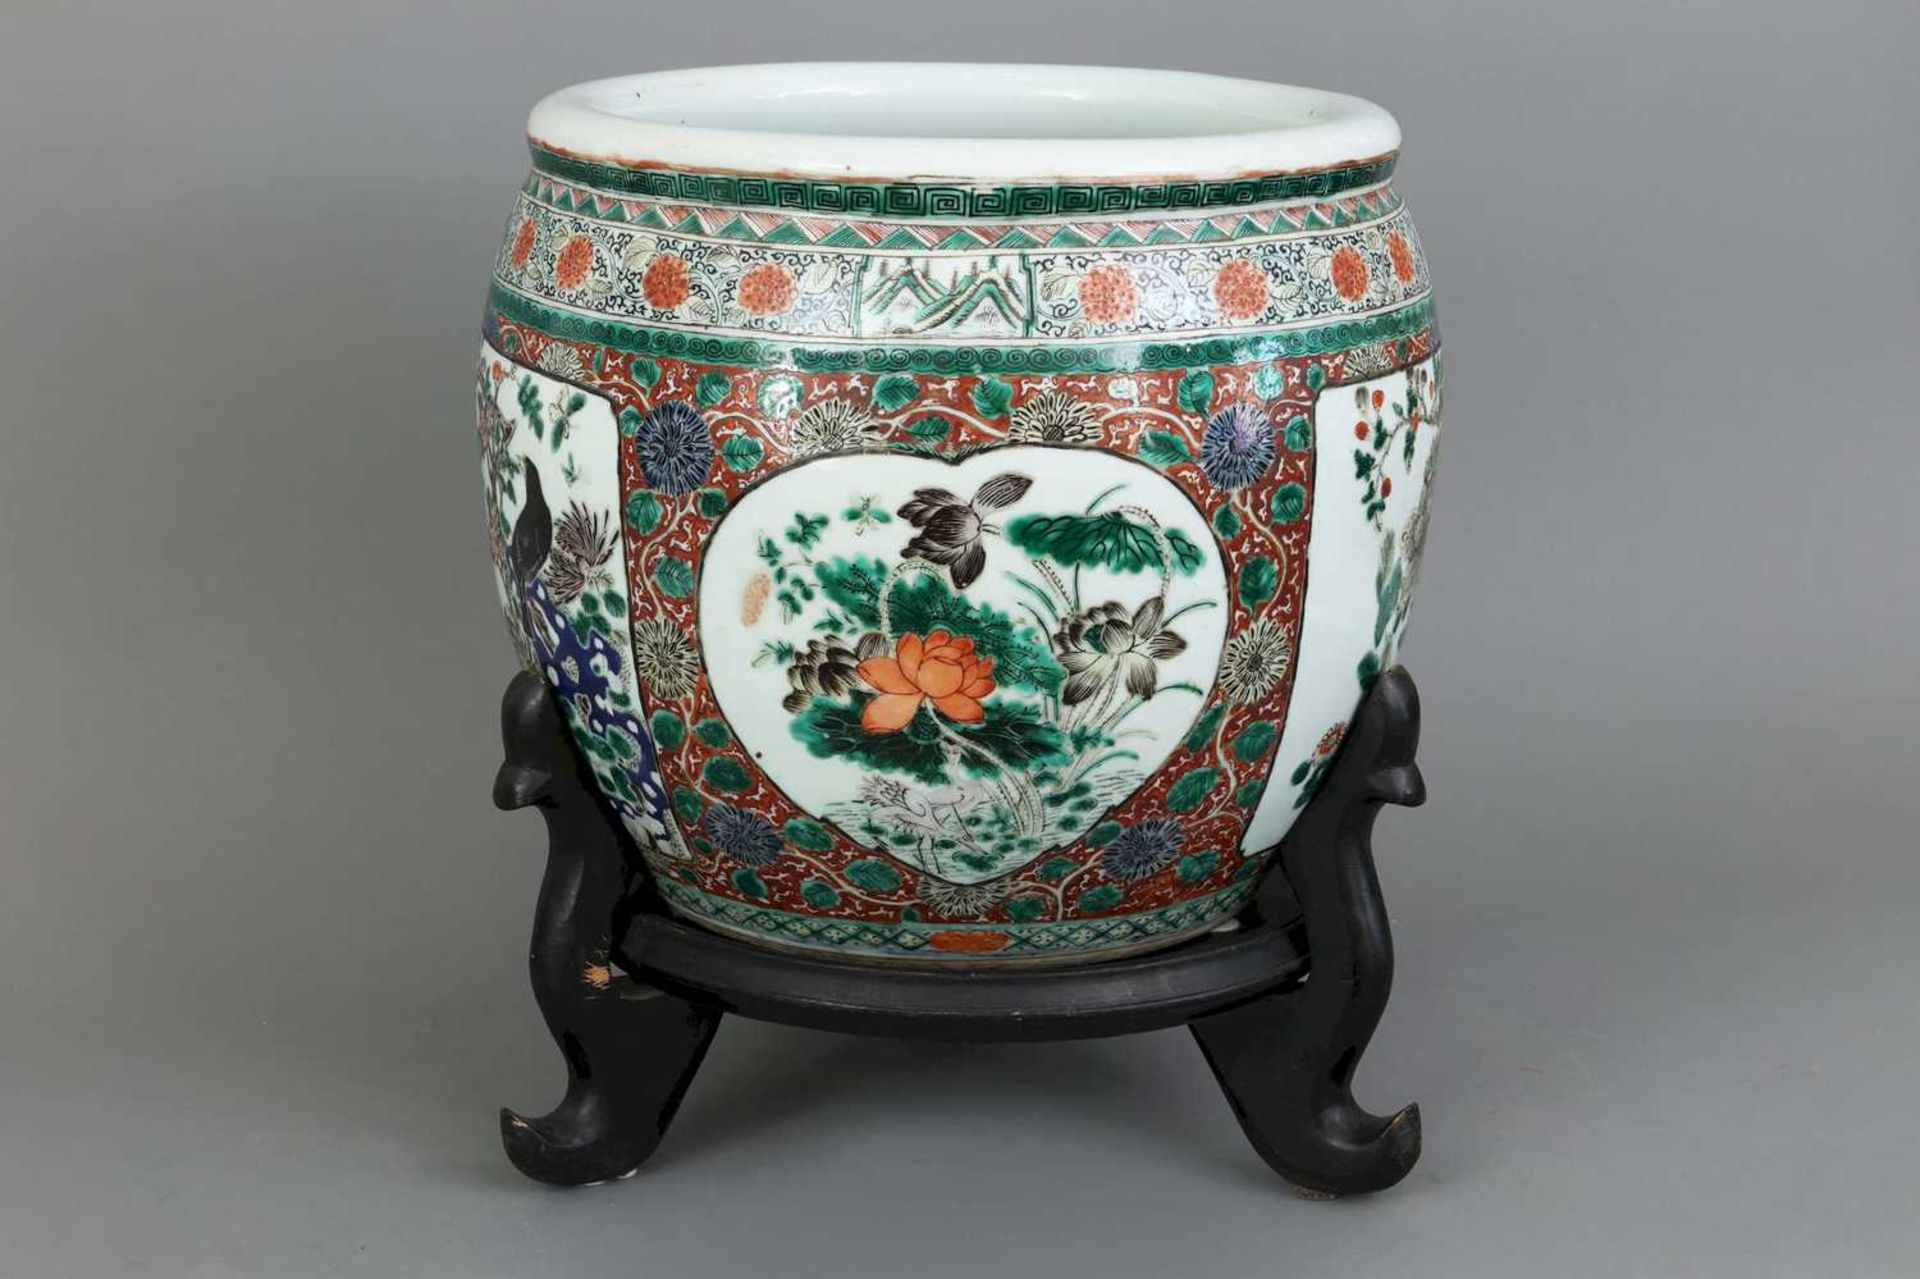 Großes chinesisches Porzellan-Cachepot "Fishbowl" - Bild 2 aus 3